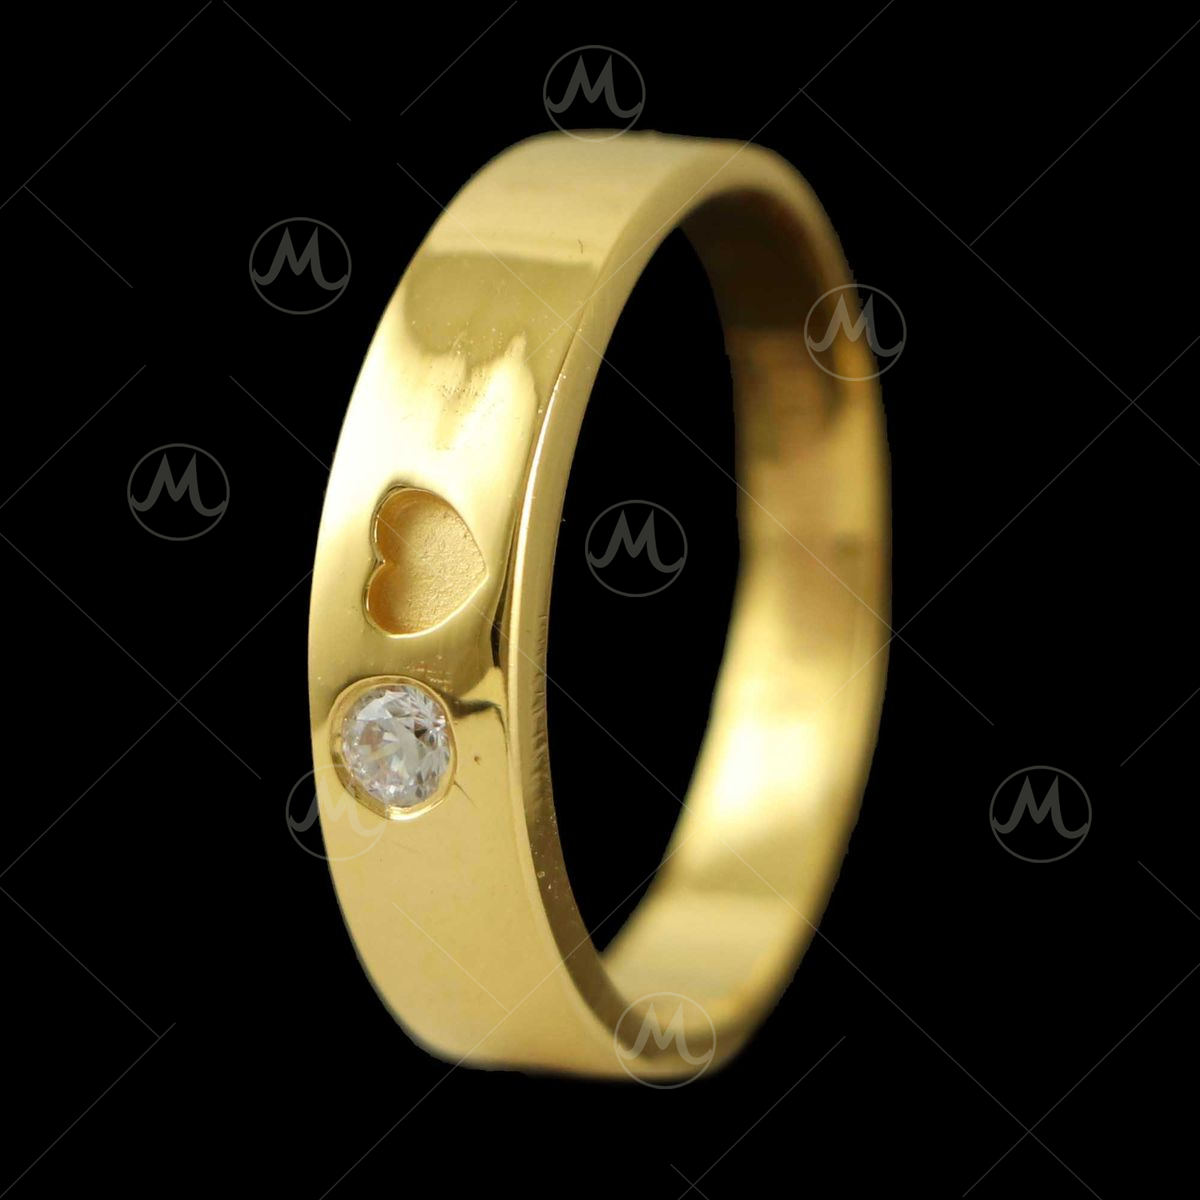 22K Gold Vanki Ring With Cz & Color Stones - 235-GVR357 in 5.500 Grams